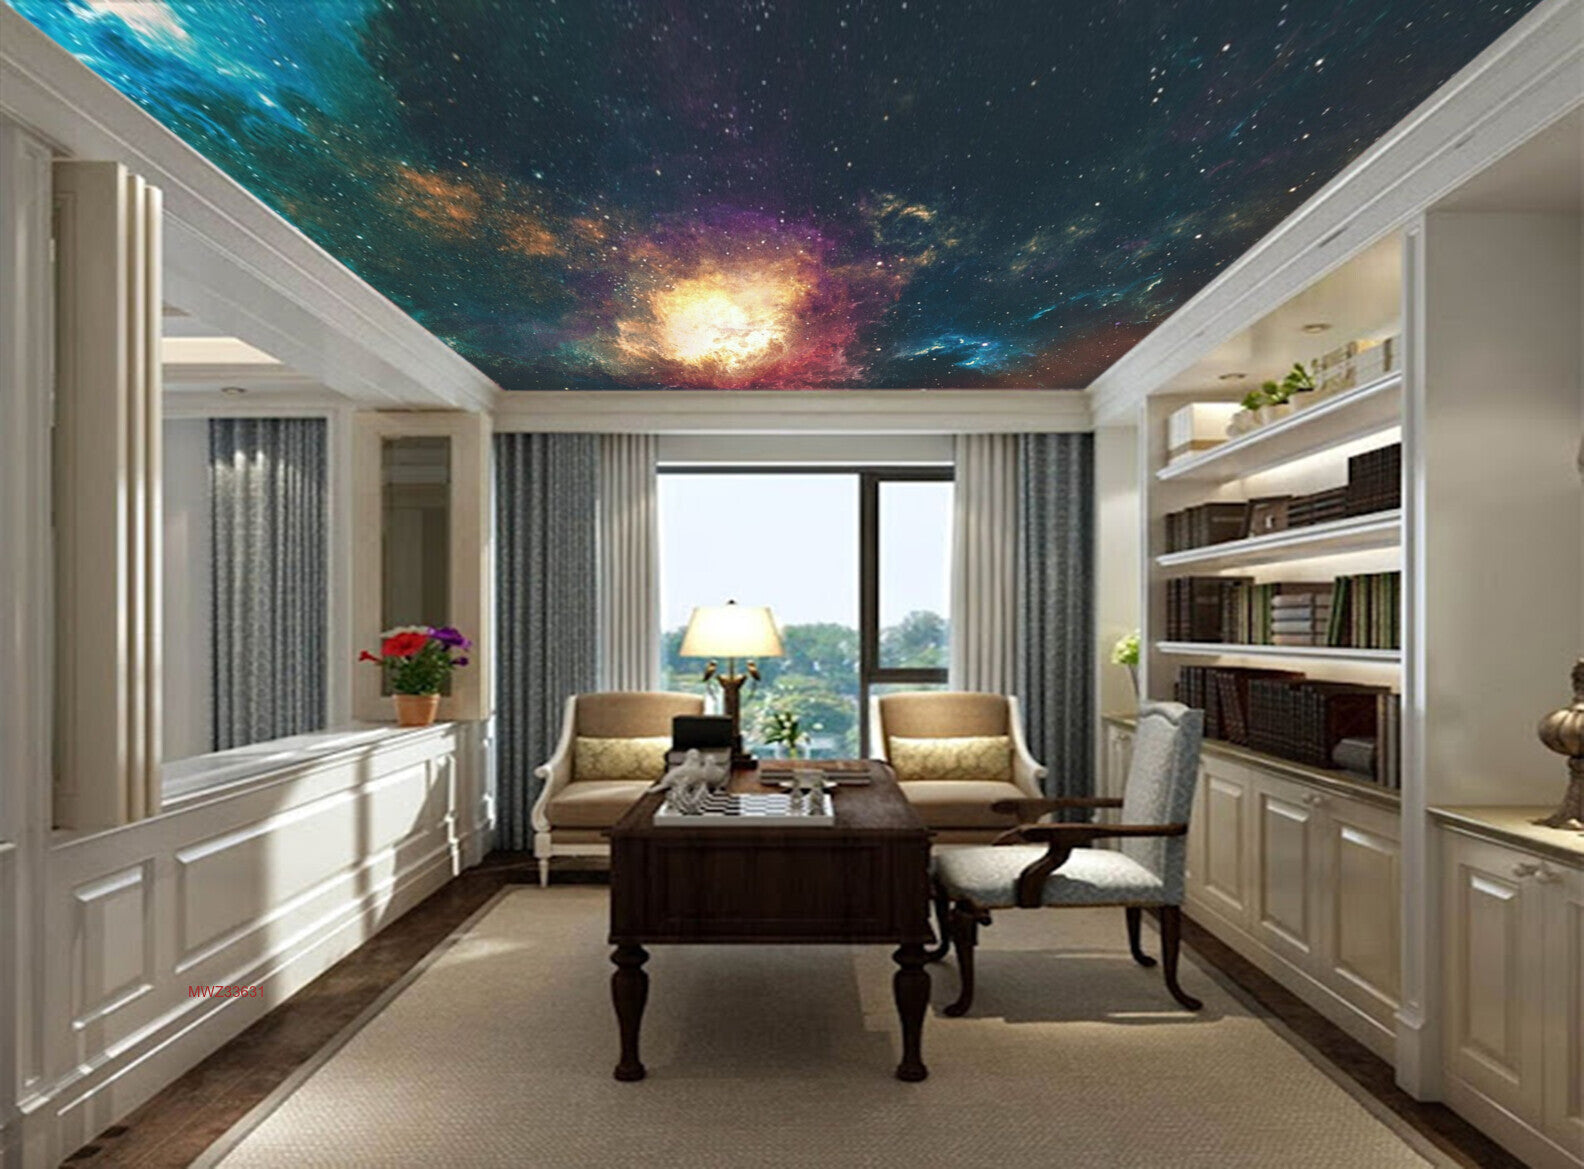 Avikalp MWZ3363 Galaxy Stars Solar System HD Wallpaper for Ceiling